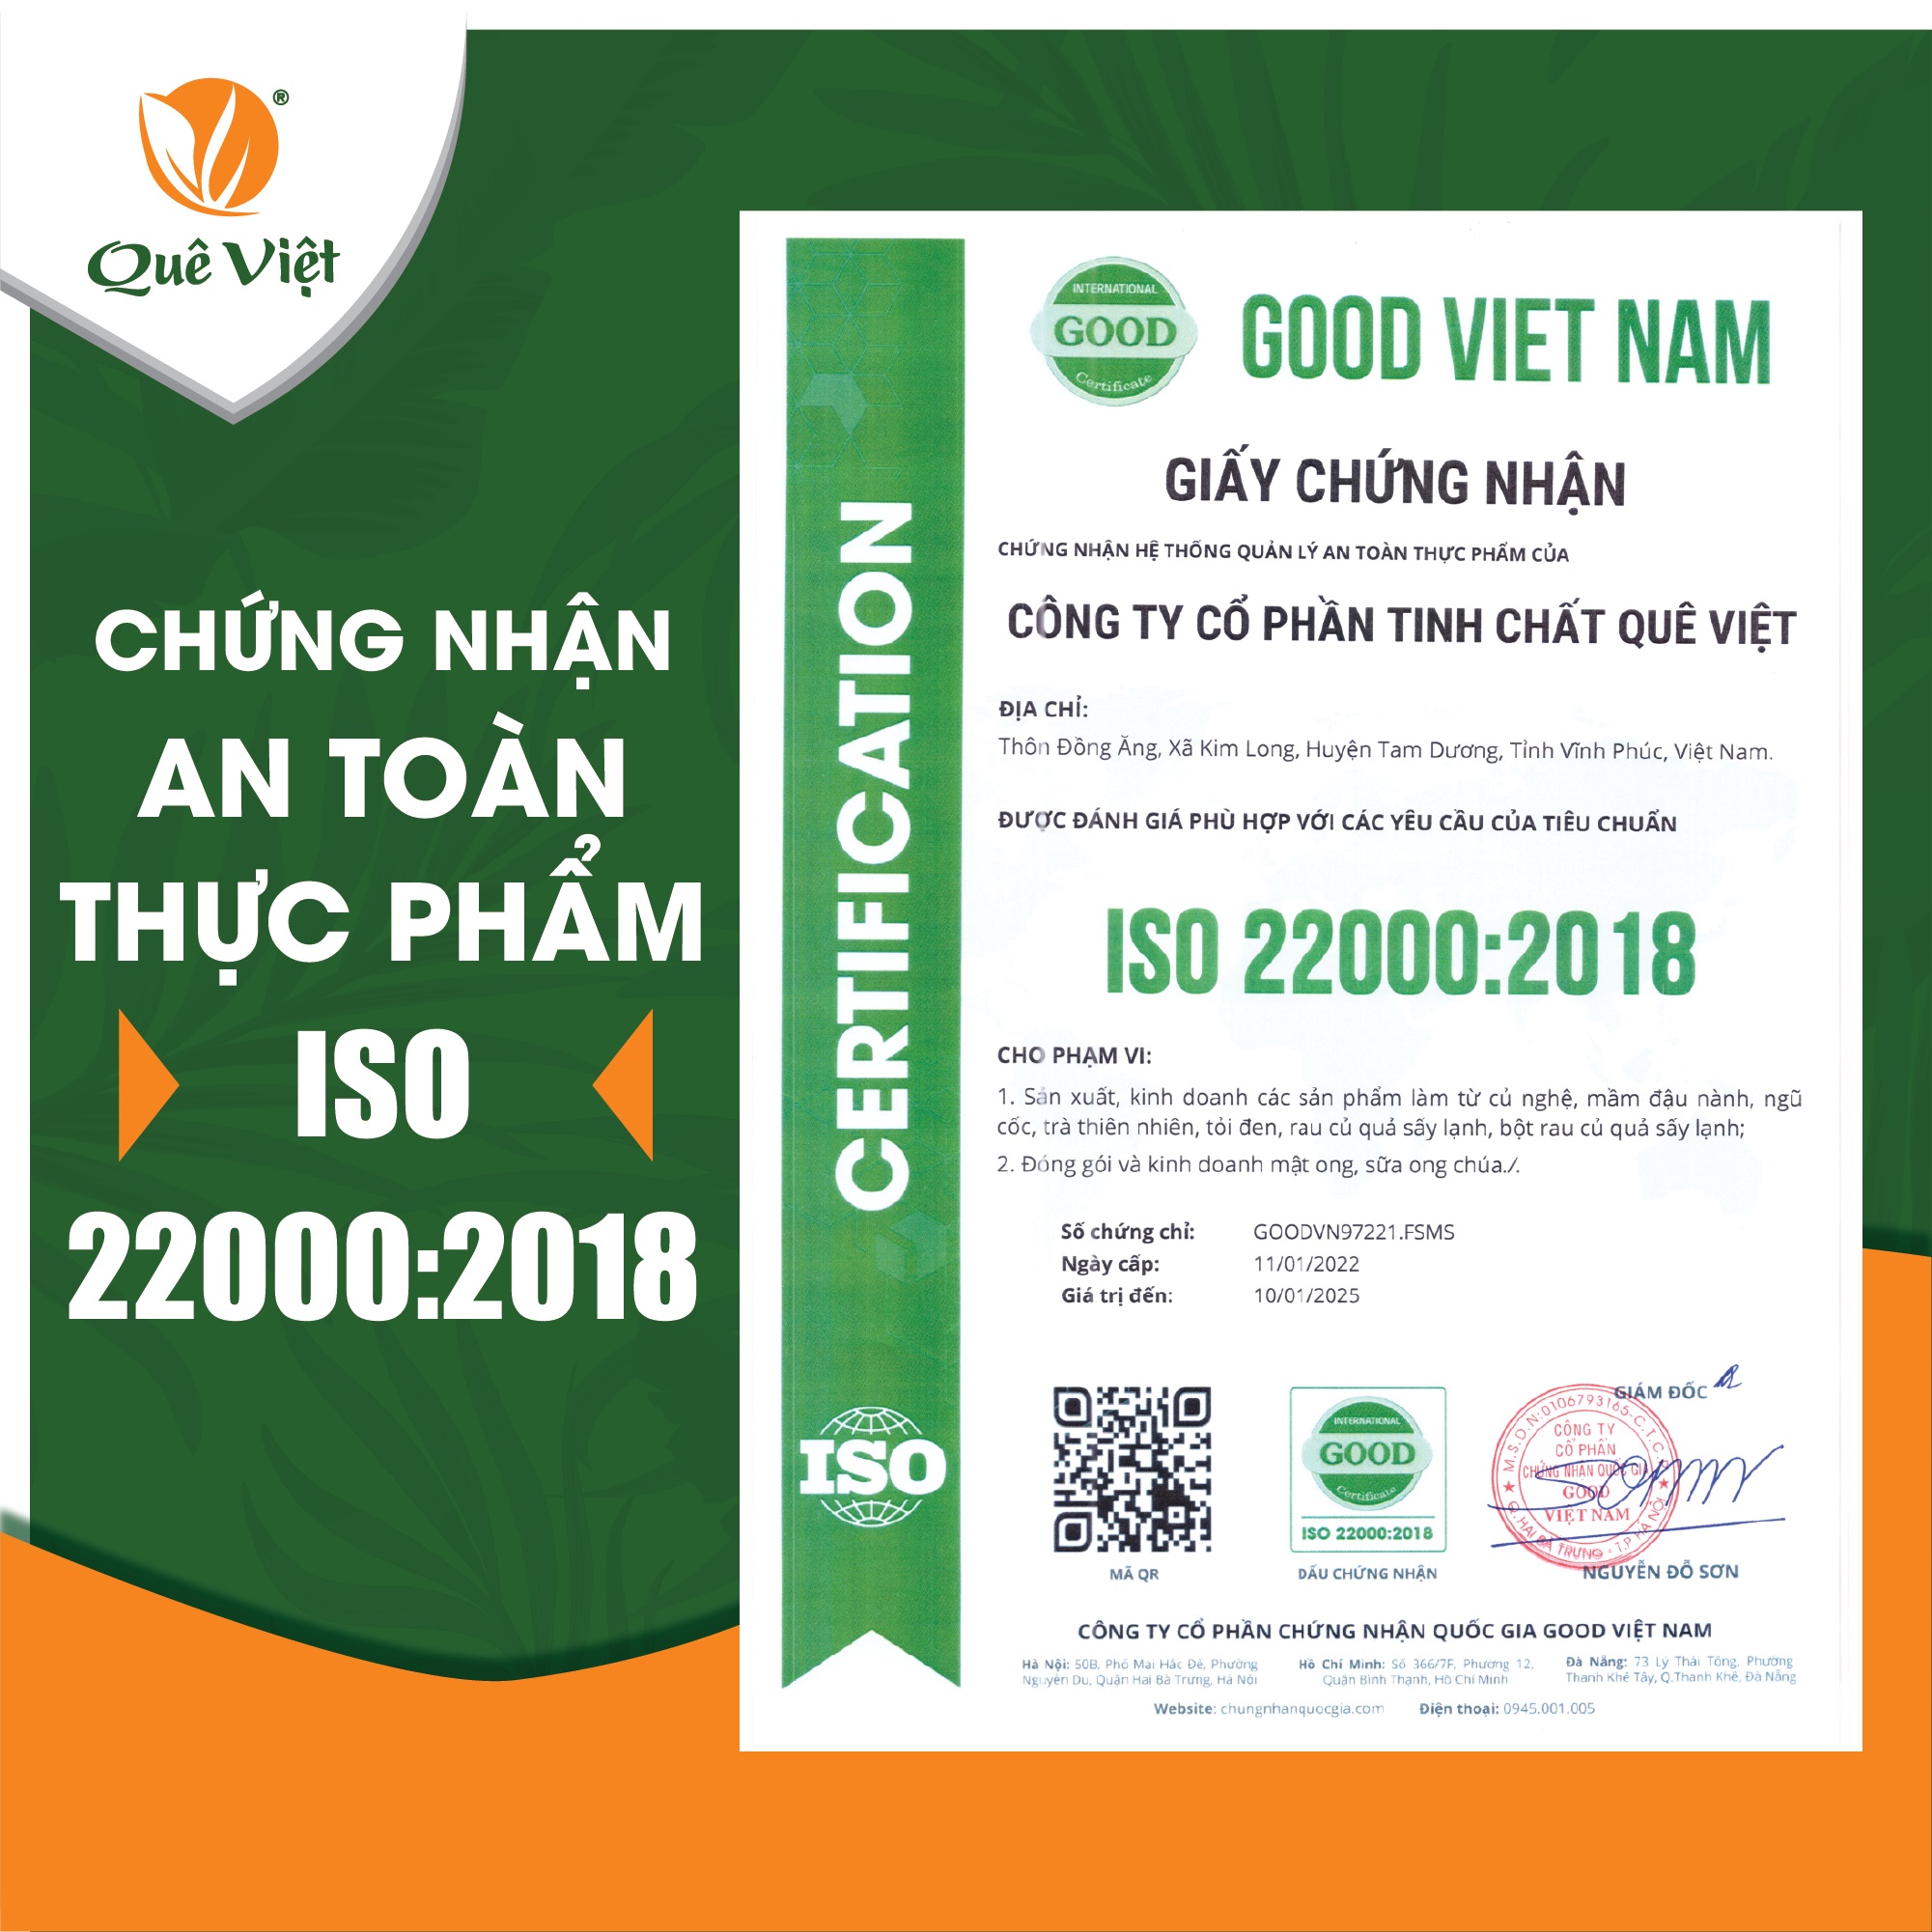 Trà gạo lứt Quê Việt thanh lọc gan, giải độc cơ thể nguyên liệu tự nhiên an toàn (3 hộp x 600gr)